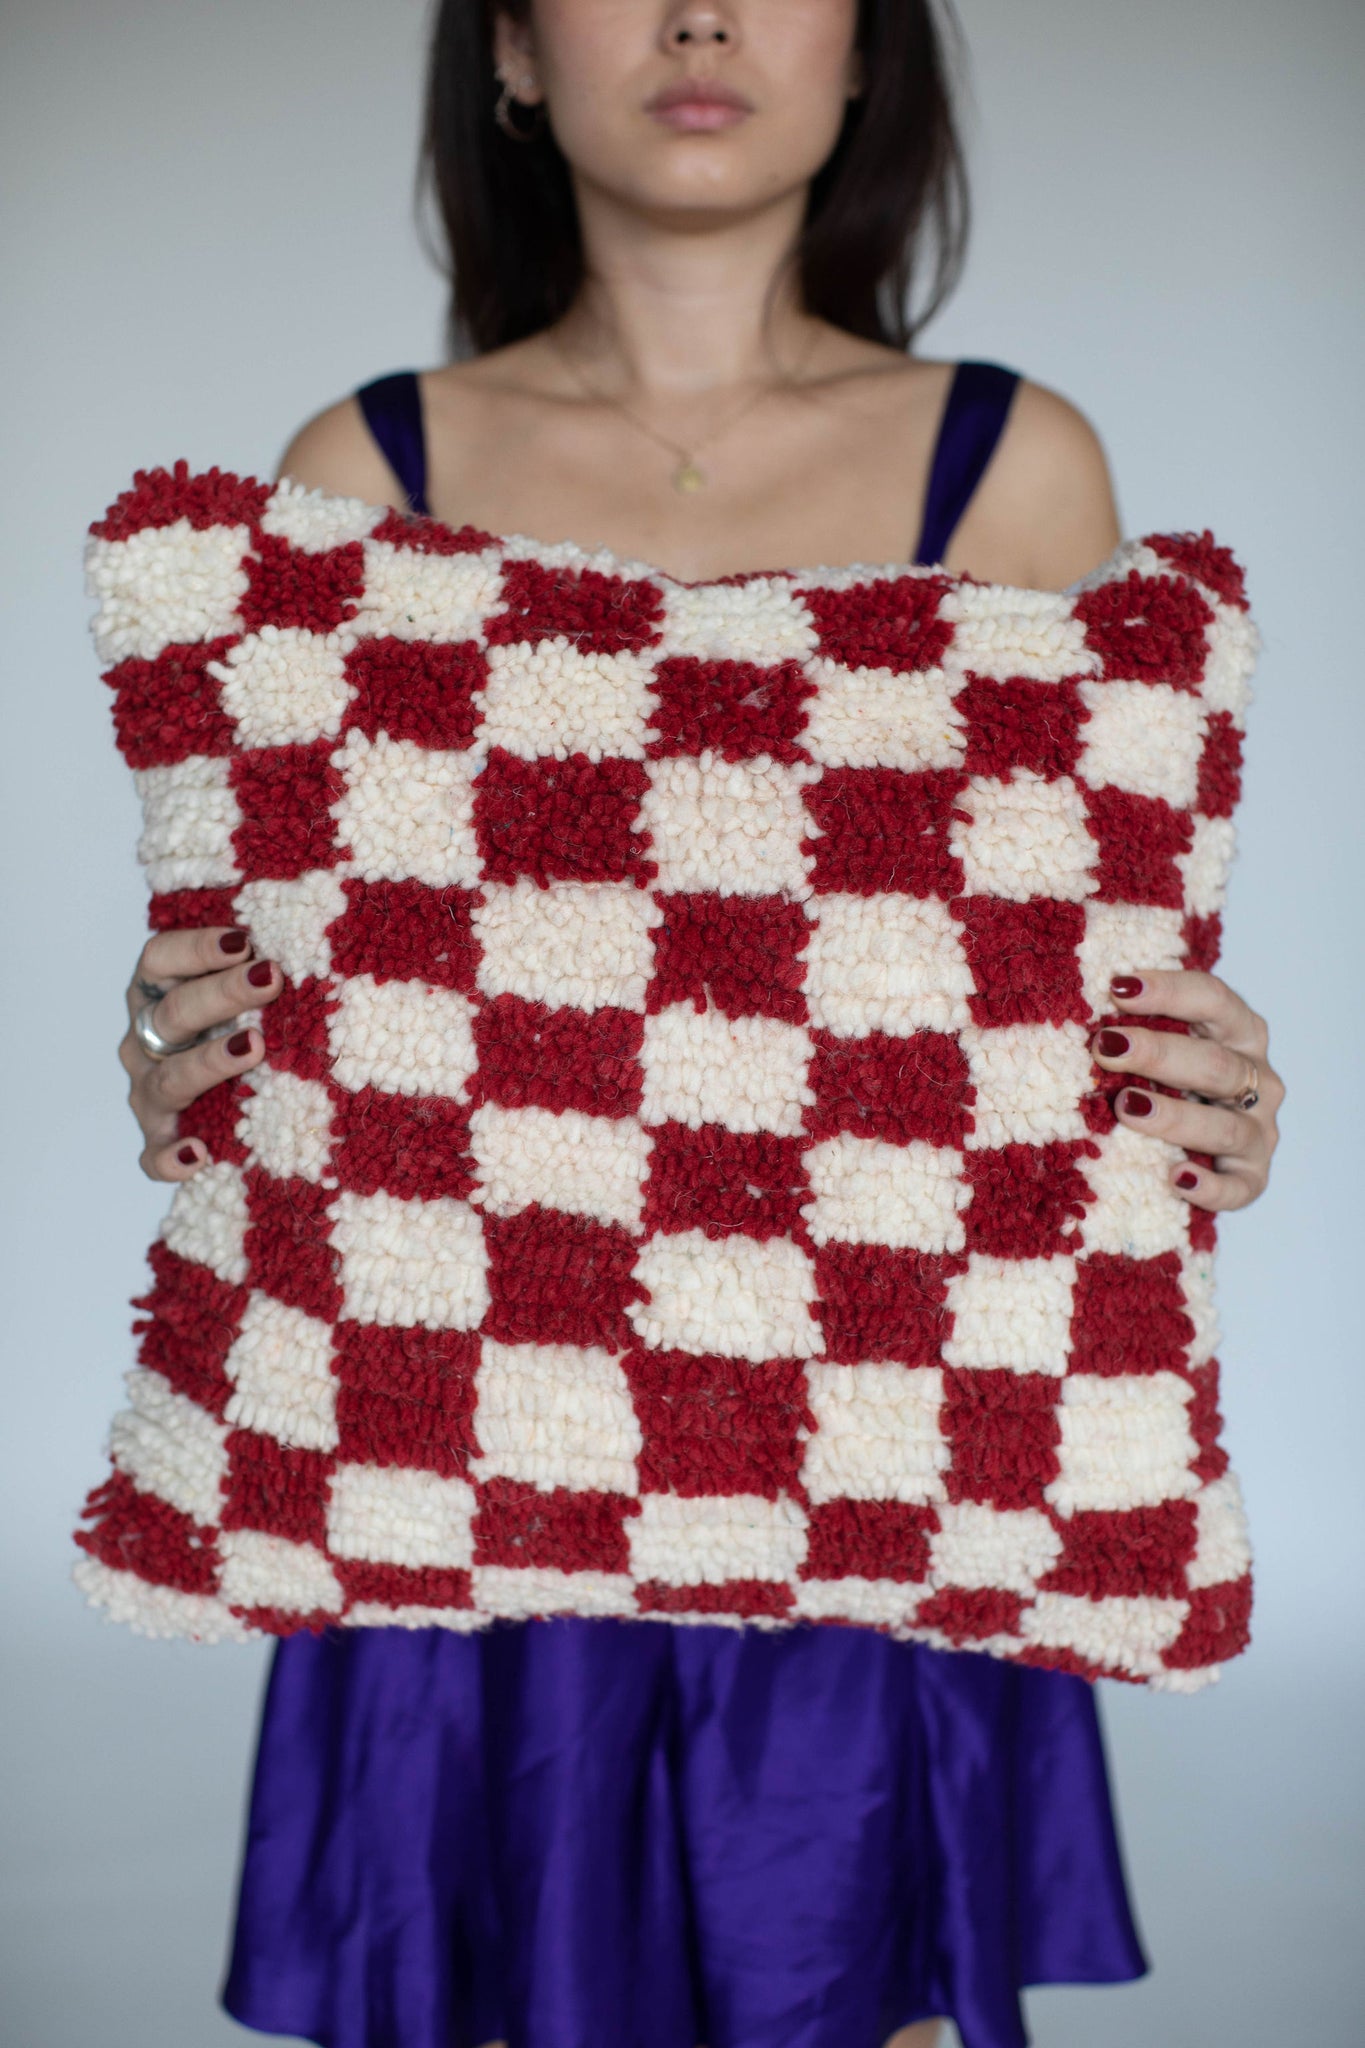 Handmade Moroccan Checkered Pillows